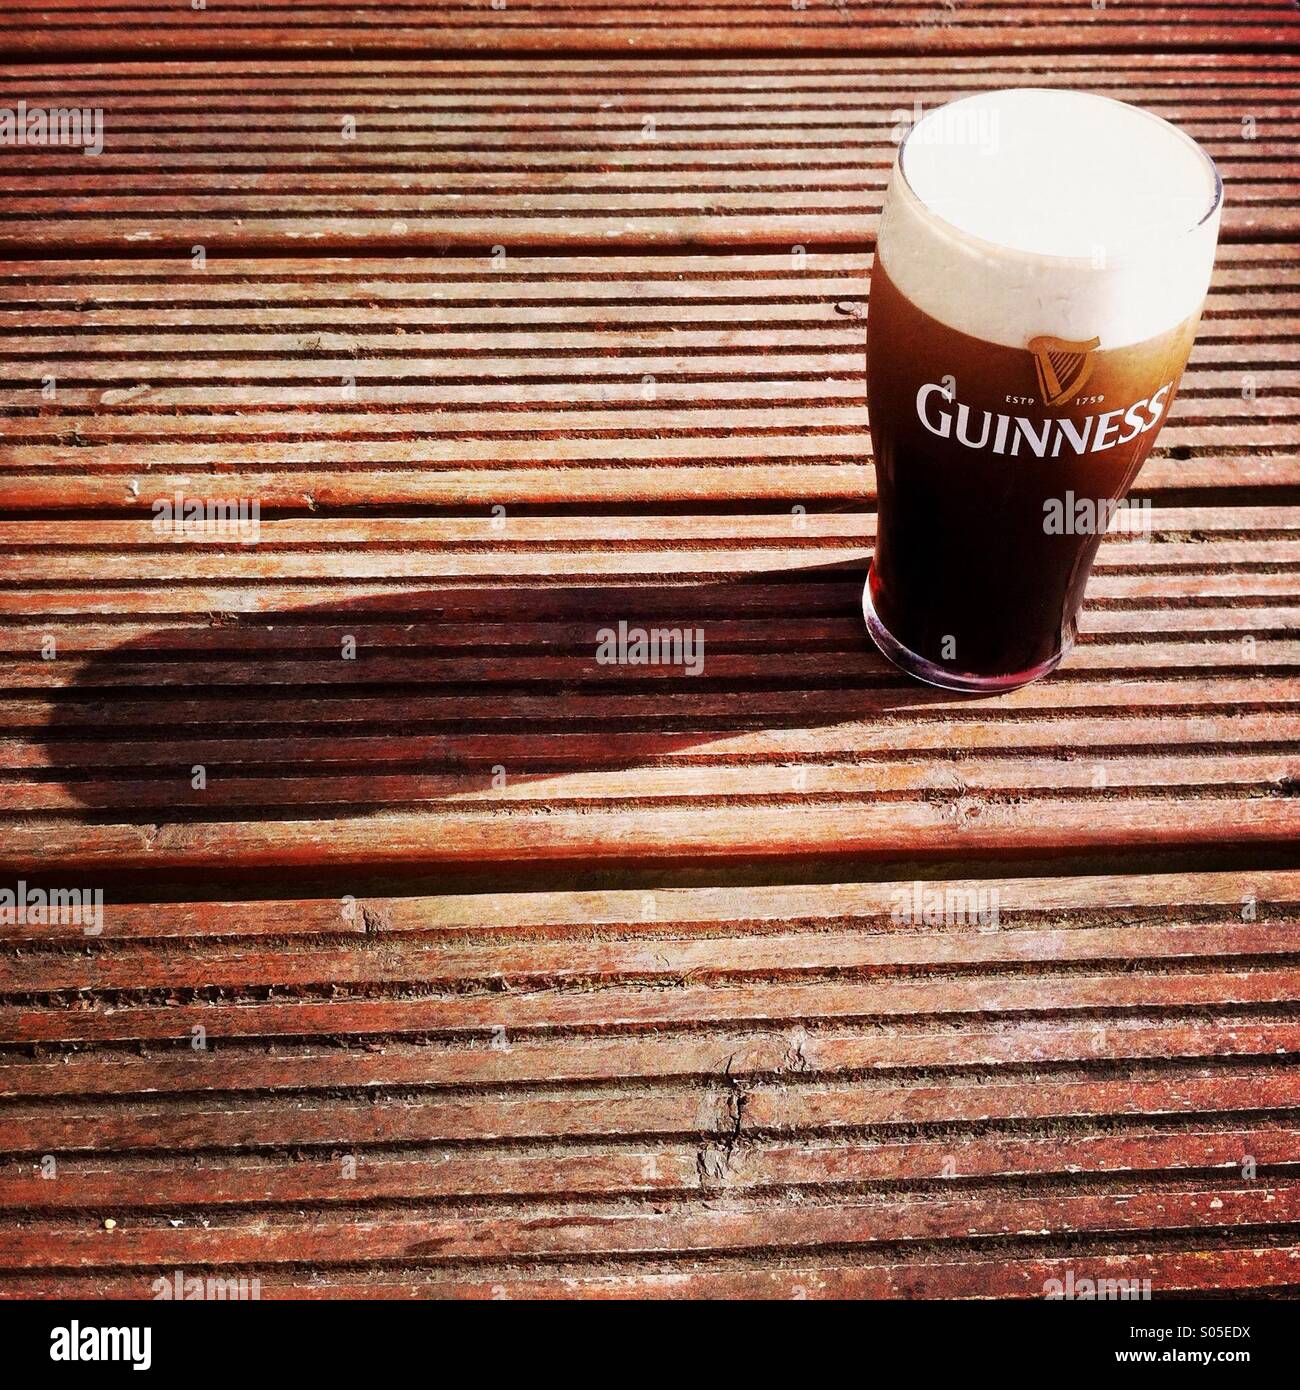 Une pinte de Guinness sur une table. Waterville, Irlande. Banque D'Images